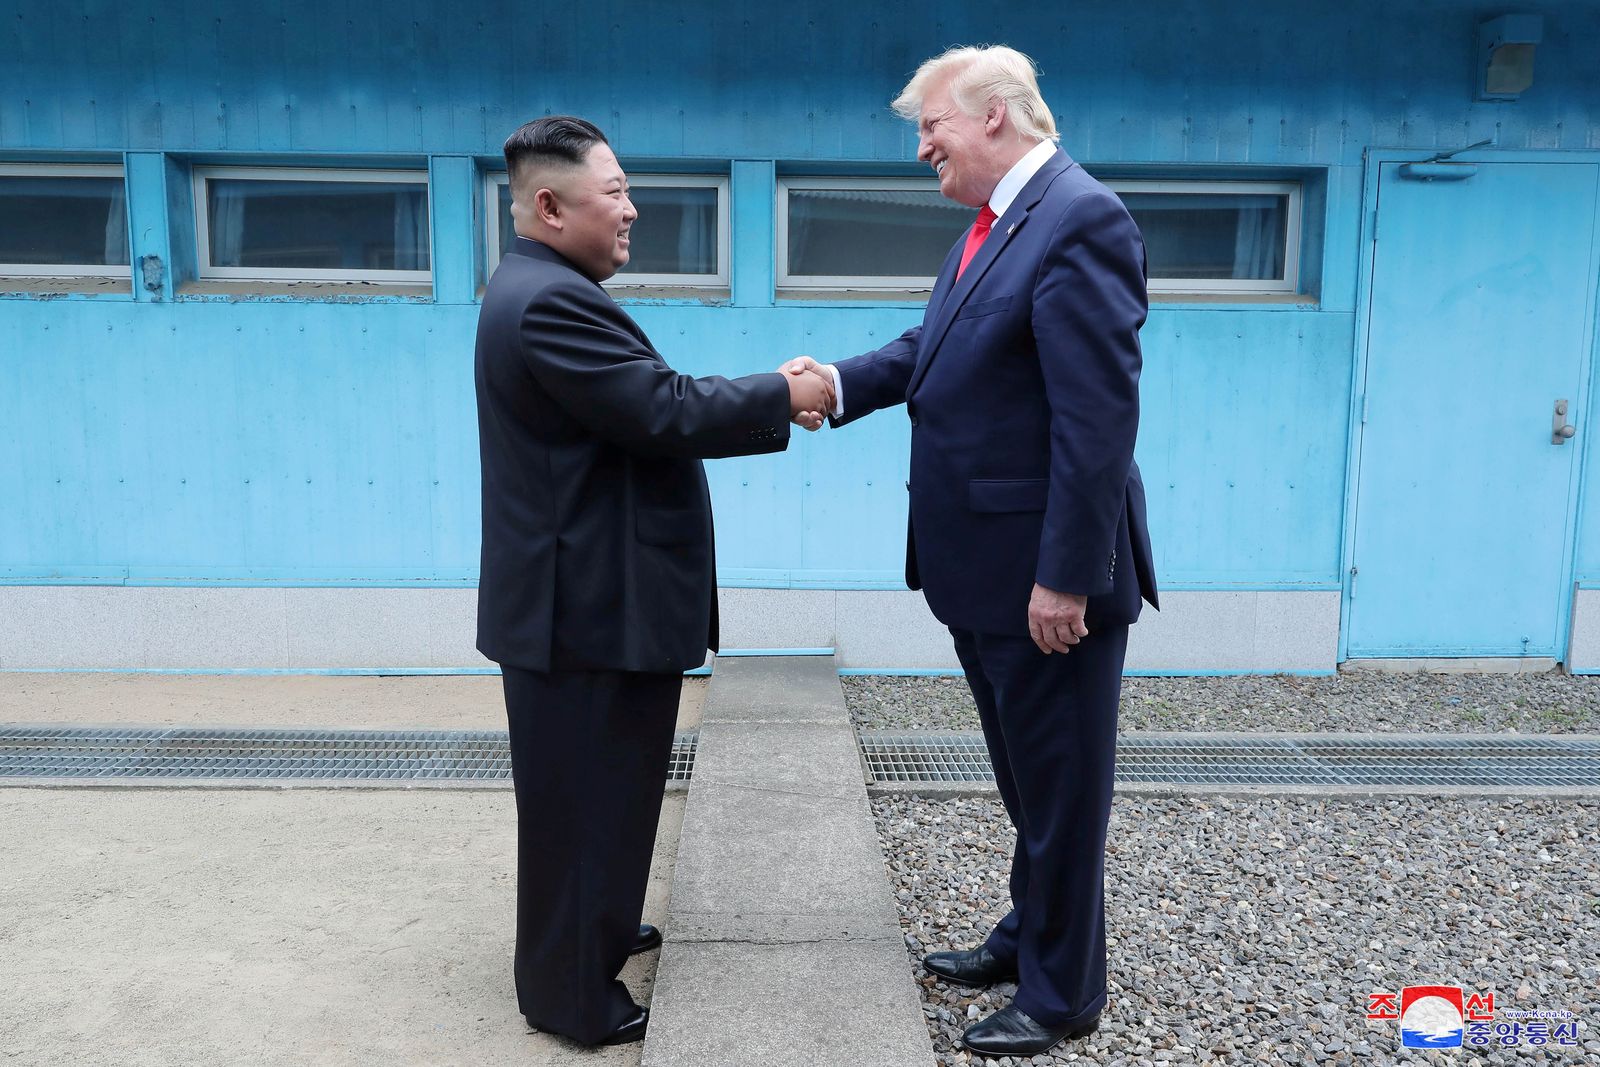 الرئيس الأميركي السابق دونالد ترمب والزعيم الكوري الشمالي كيم جونغ أون يتصافحان أثناء لقائهما على الحدود بين الكوريتين - 30 يونيو 2019 - REUTERS